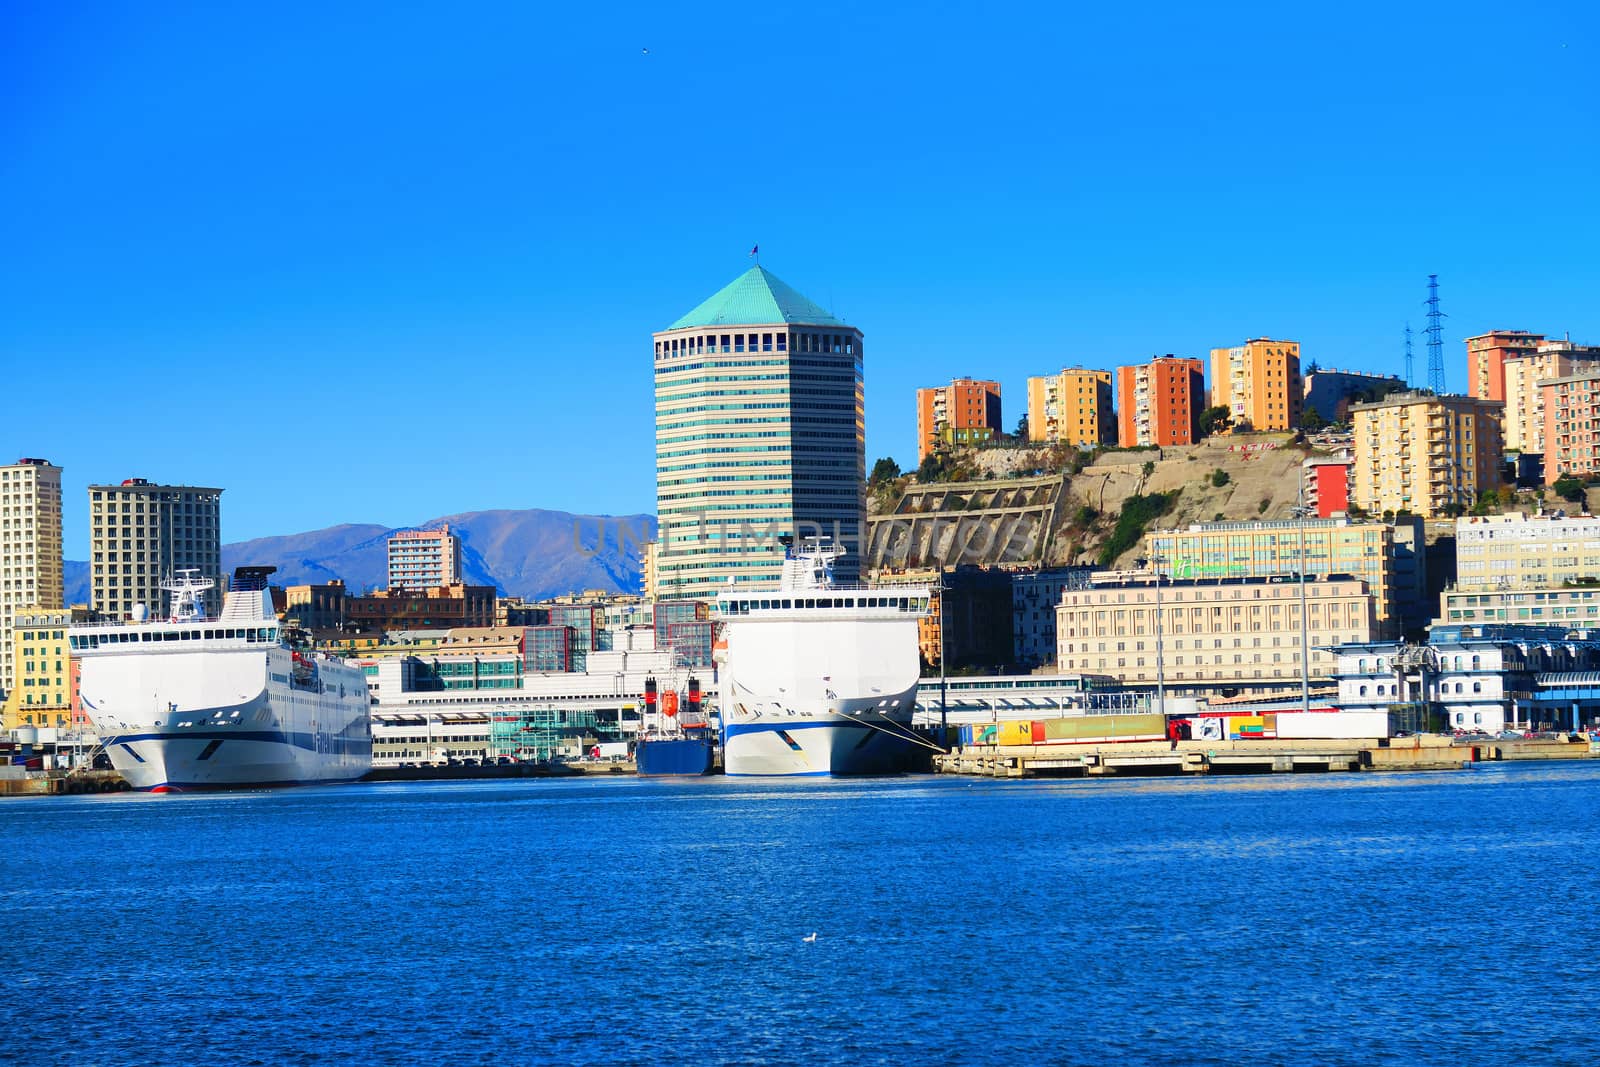 The port of Genoa, Italy by dav76